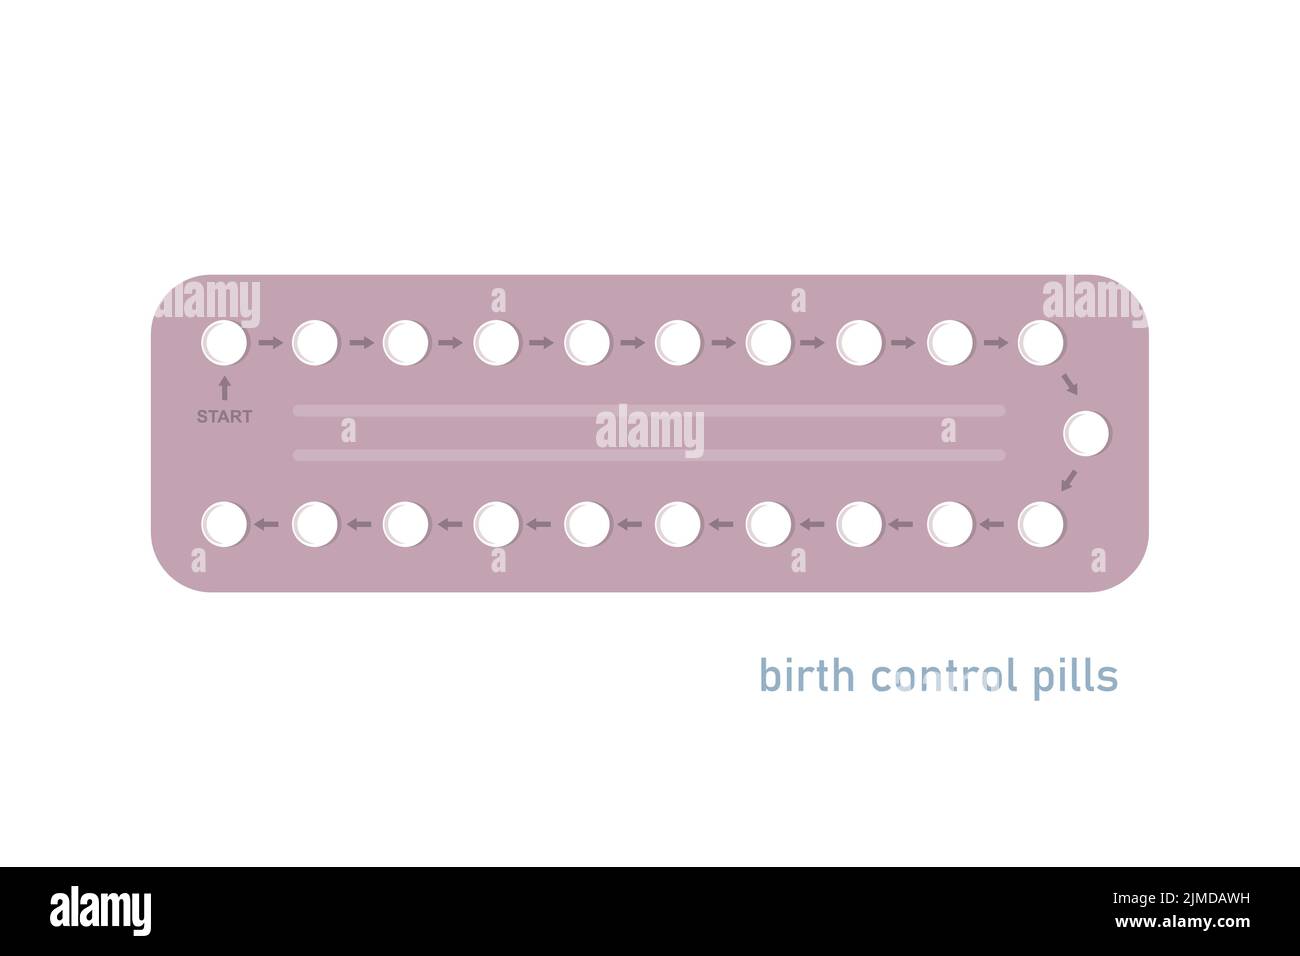 píldoras anticonceptivas info gráfico aislado en blanco Ilustración del Vector